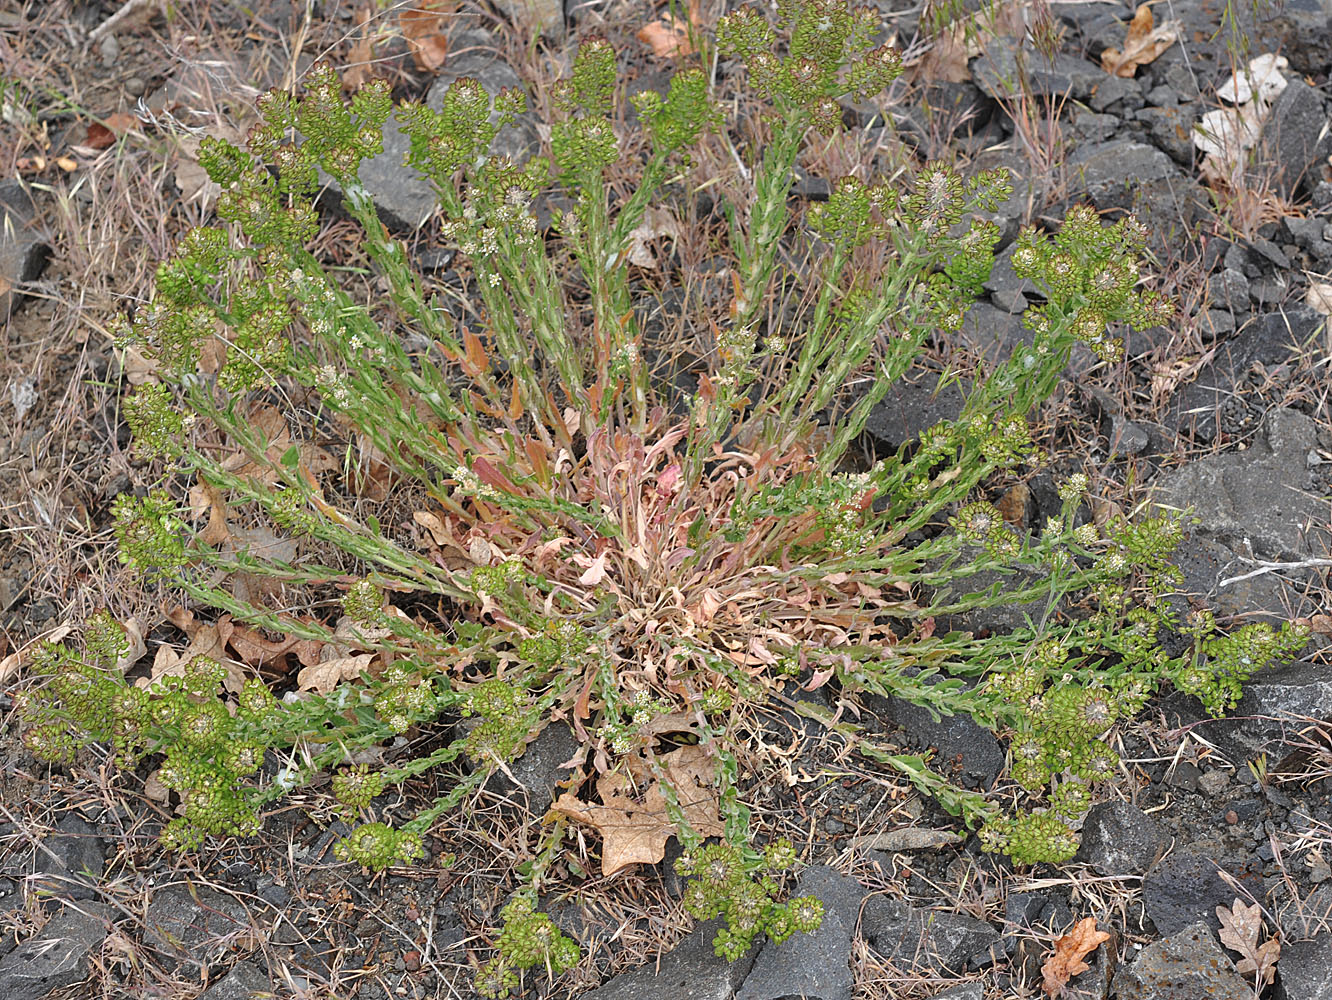 Flora of Eastern Washington Image: Lepidium heterophyllum